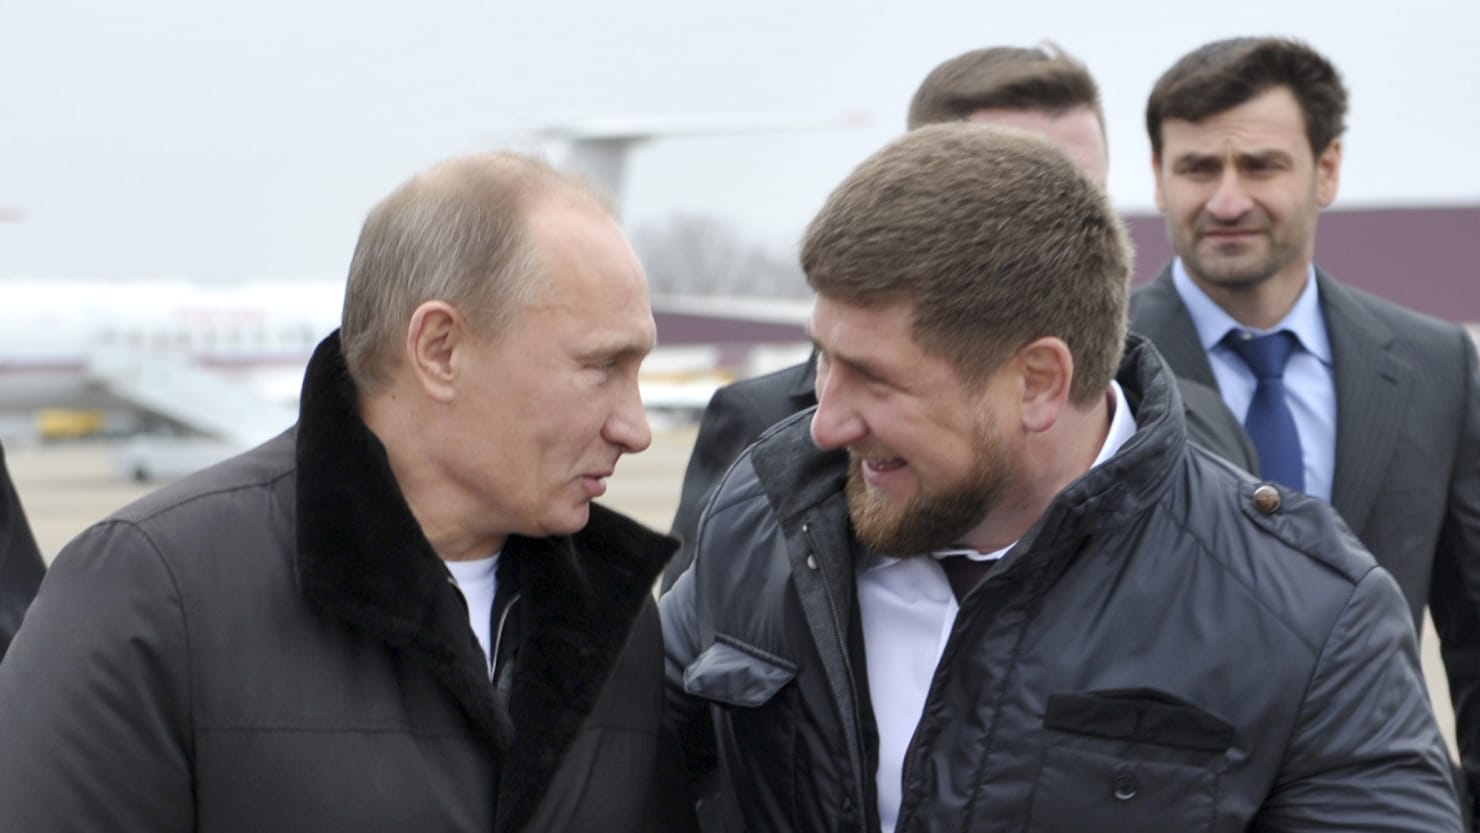 Photo of Ramsan Kadyrow, der tschetschenische Führer und Putin-Verbündete, soll sich in einem kritischen Zustand befinden